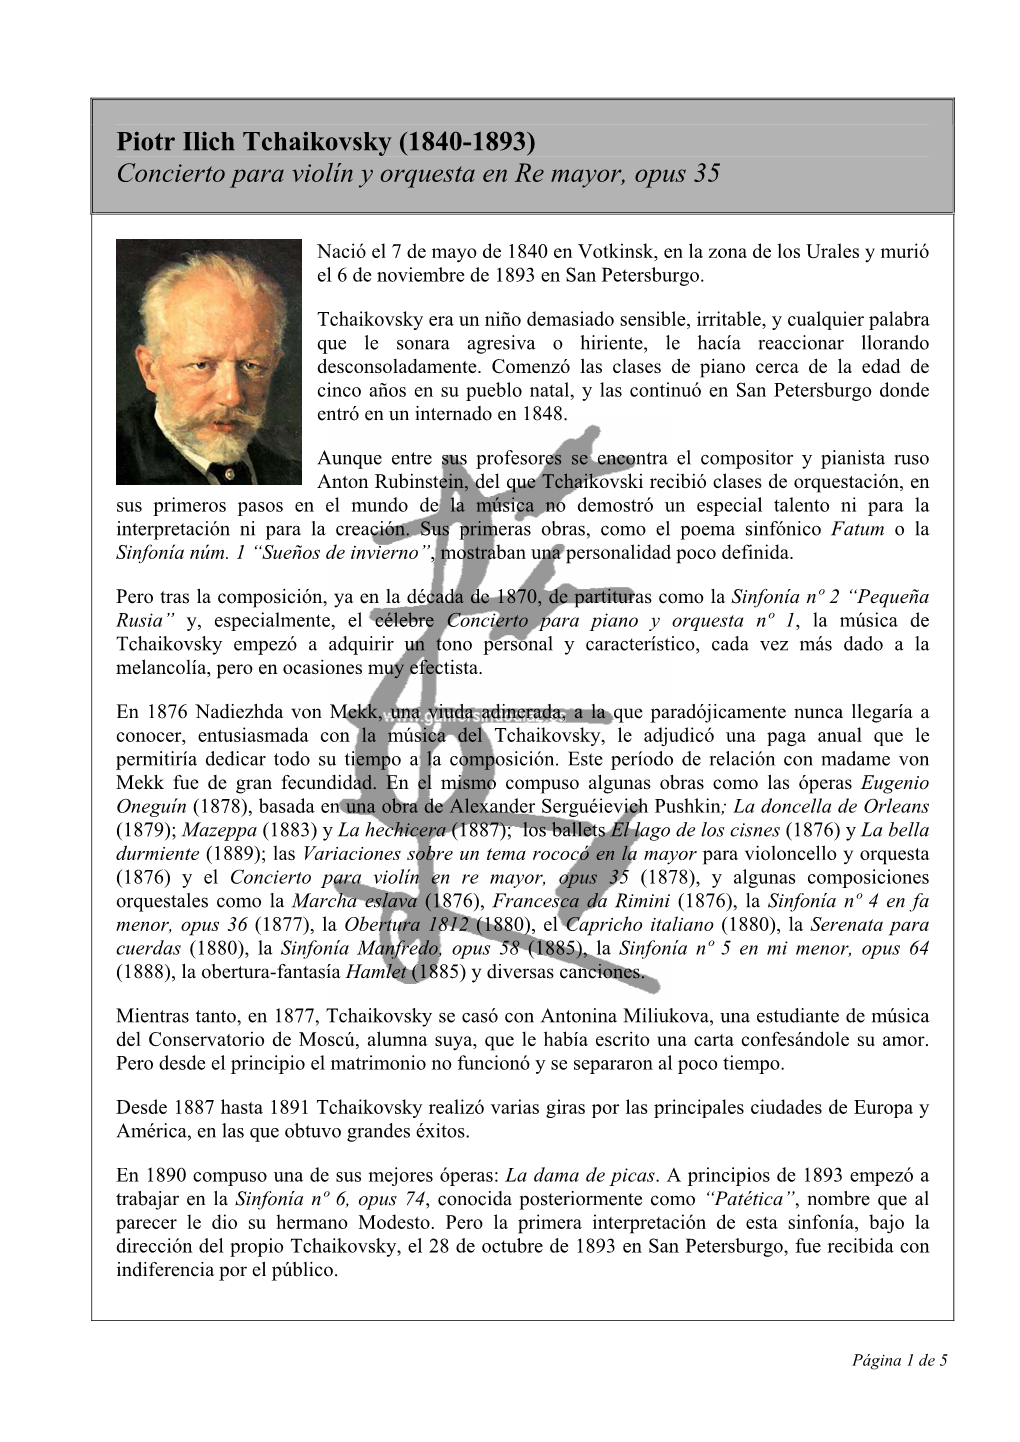 Piotr Ilich Tchaikovsky (1840-1893) Concierto Para Violín Y Orquesta En Re Mayor, Opus 35